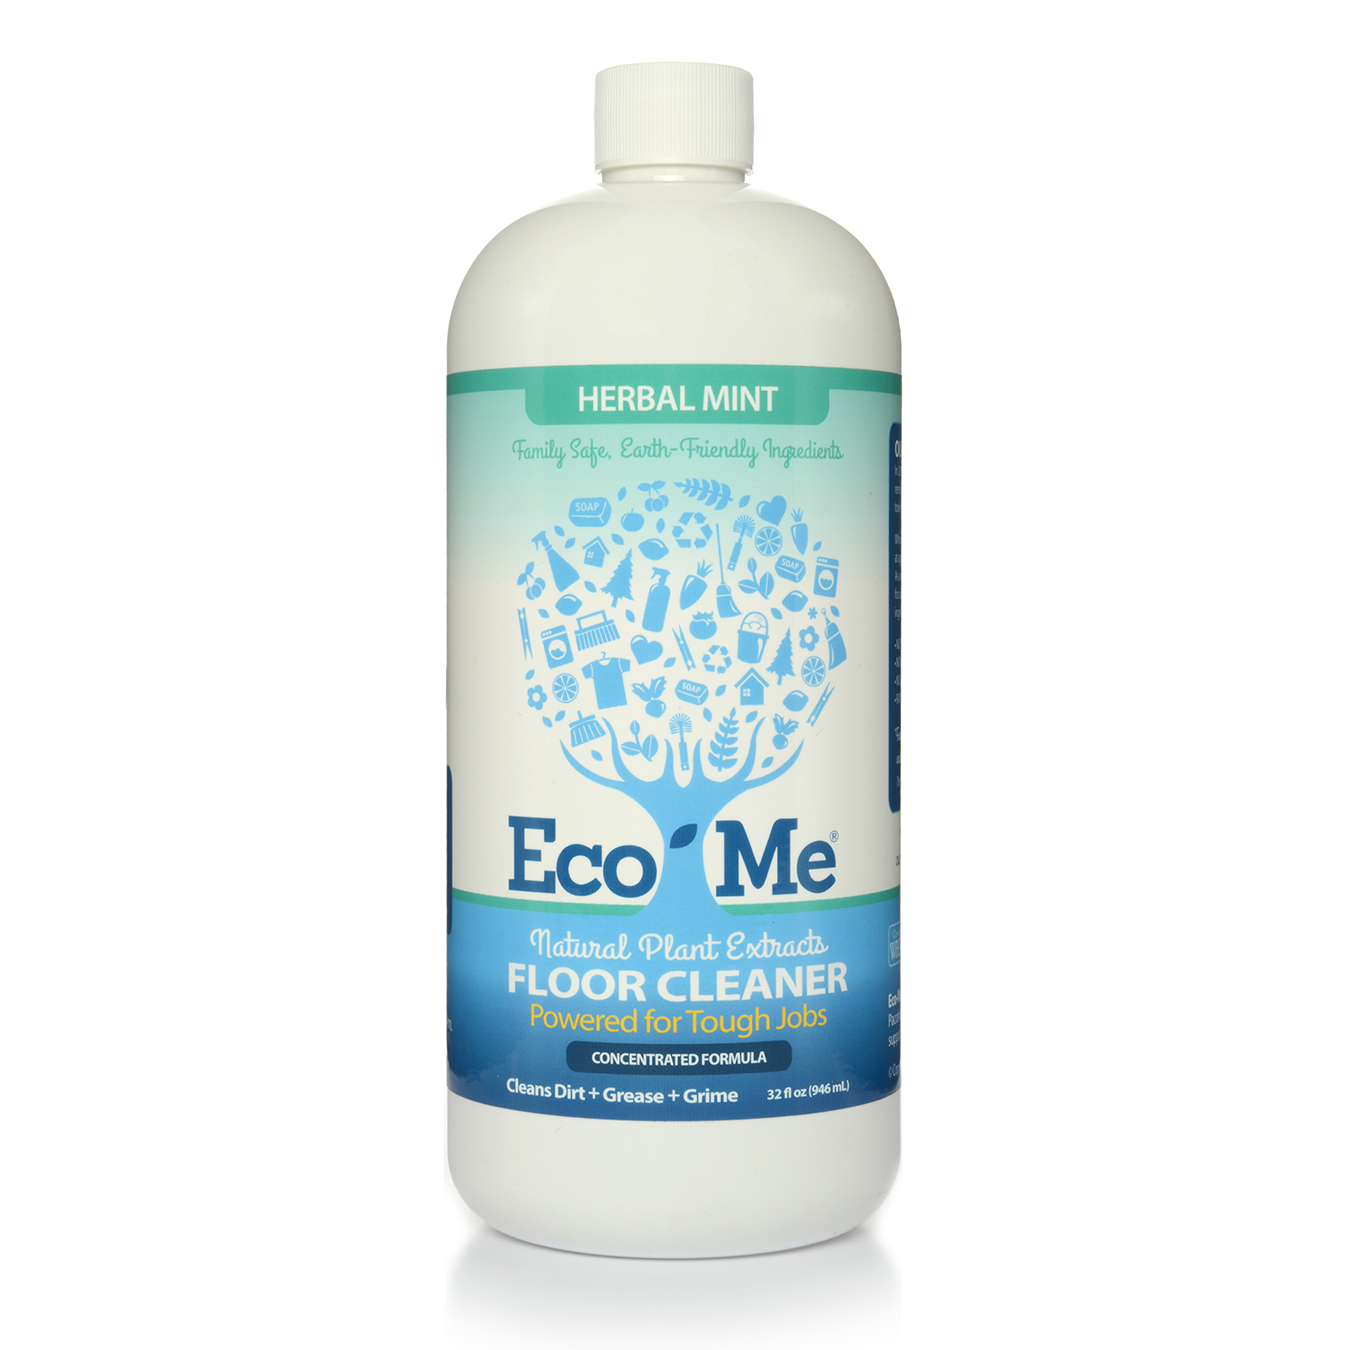 Eco-me Floor Cleaner